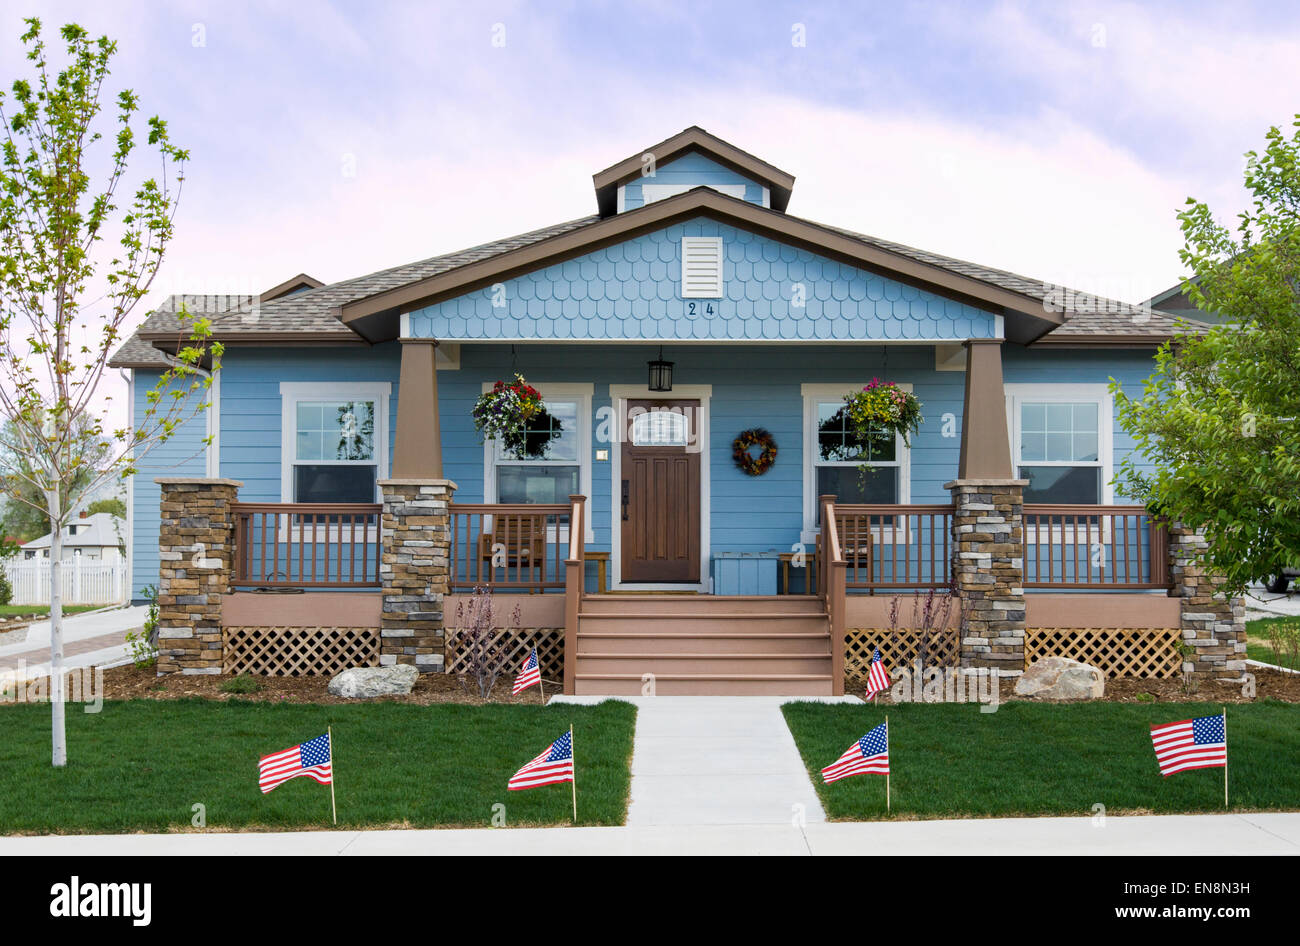 Amerikanische Flaggen, Fourth Of July, Craftsman-Stil Wohn Haus in Colorado, USA Stockfoto